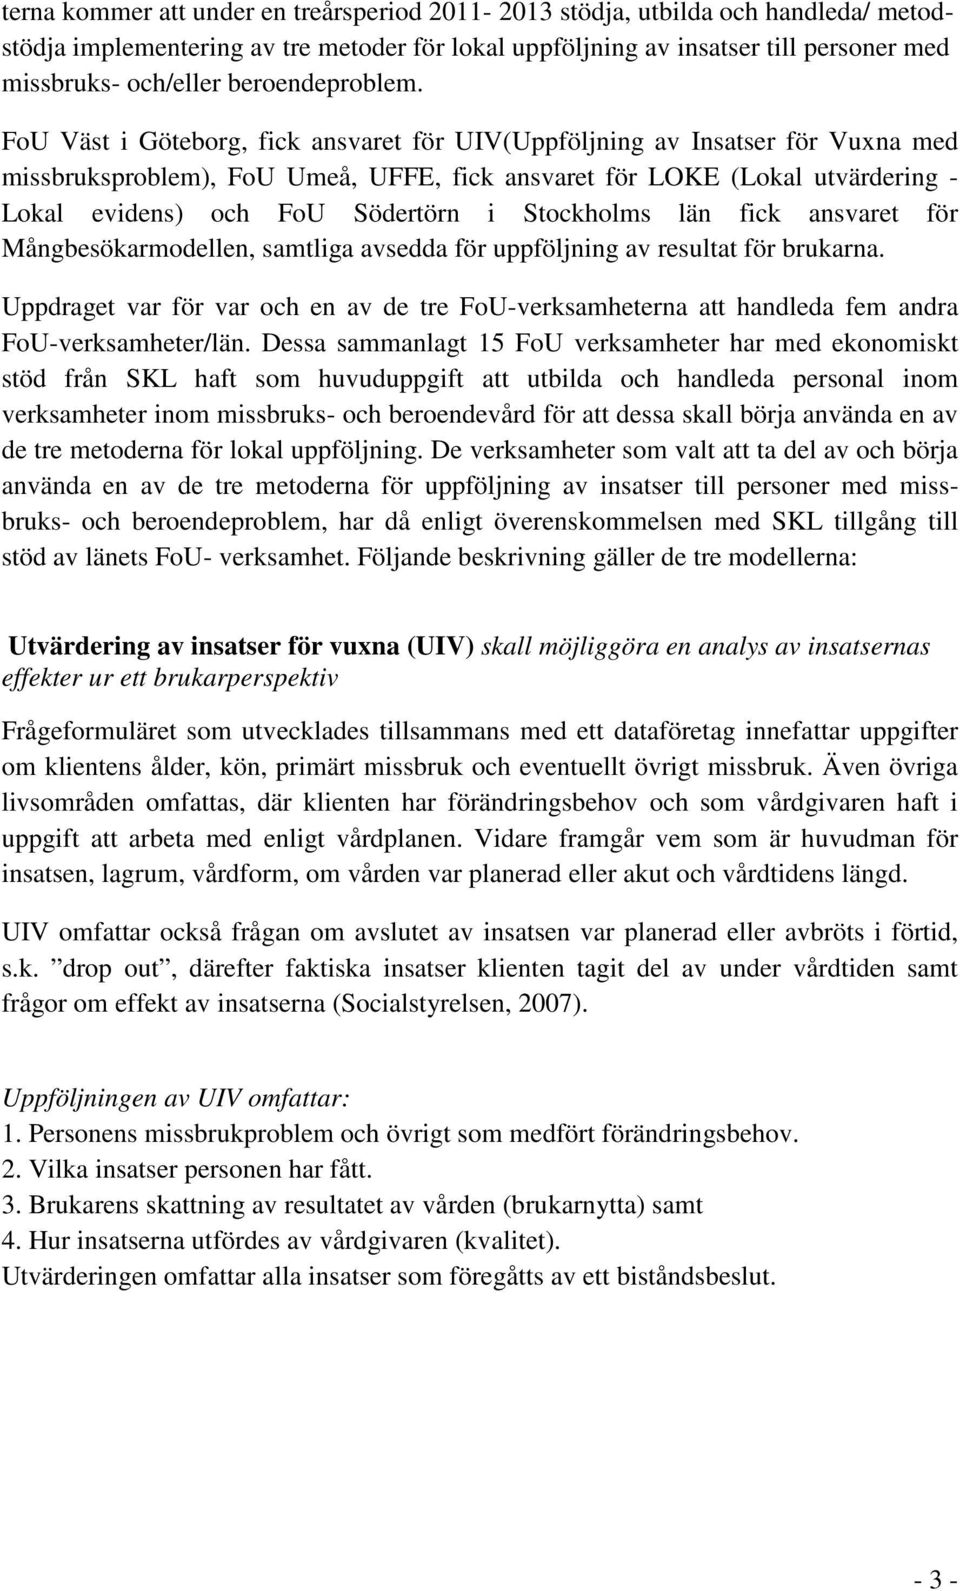 FoU Väst i Göteborg, fick ansvaret för UIV(Uppföljning av Insatser för Vuxna med missbruksproblem), FoU Umeå, UFFE, fick ansvaret för LOKE (Lokal utvärdering - Lokal evidens) och FoU Södertörn i